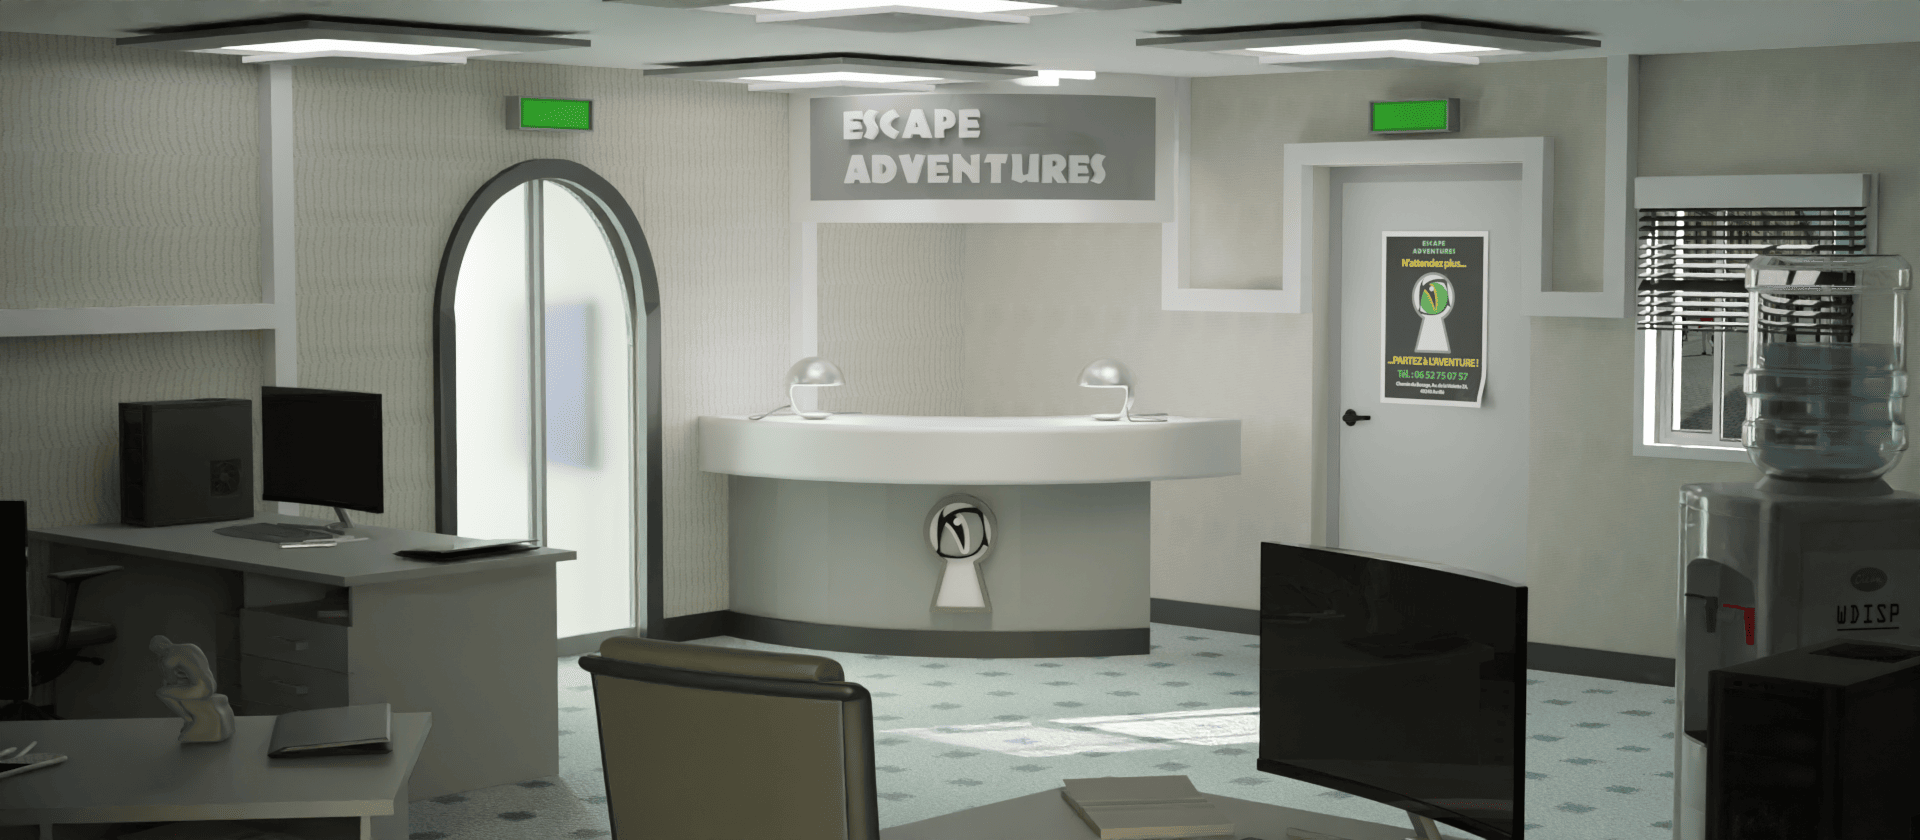 image de fond d'accueil du site de la société d'escape game escape adventures Angers représentant un bureau modélisé en 3D de jour